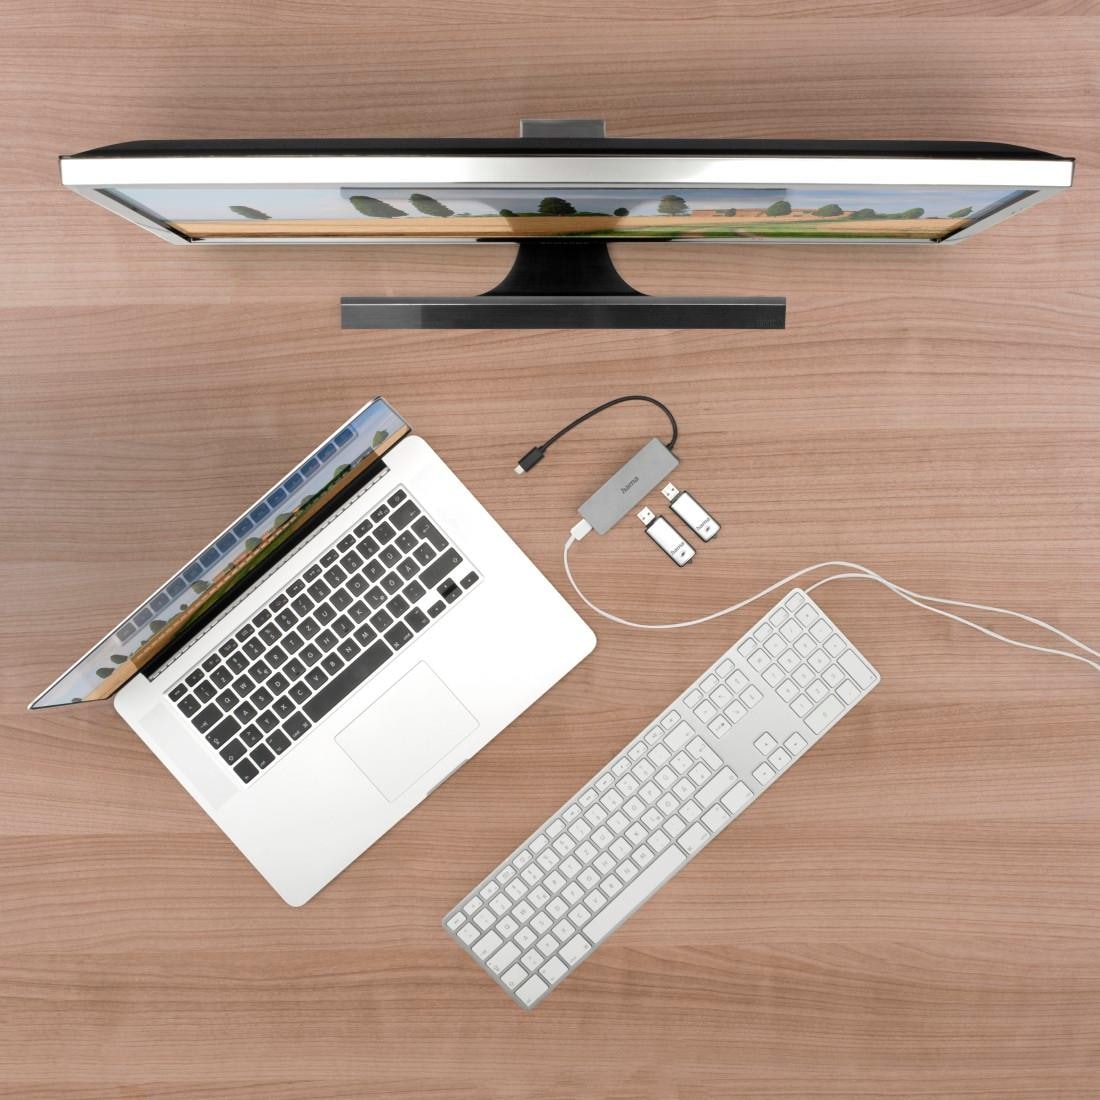 Hama USB-Adapter »USB-C Multiport Hub für Laptop mit 4 Ports, USB-A, USB-C, silberfarben«, USB-C zu USB Typ A-USB-C, 15 cm, Laptop Dockingstation, USB Adapter, robustes Aluminiumgehäuse, kompakt